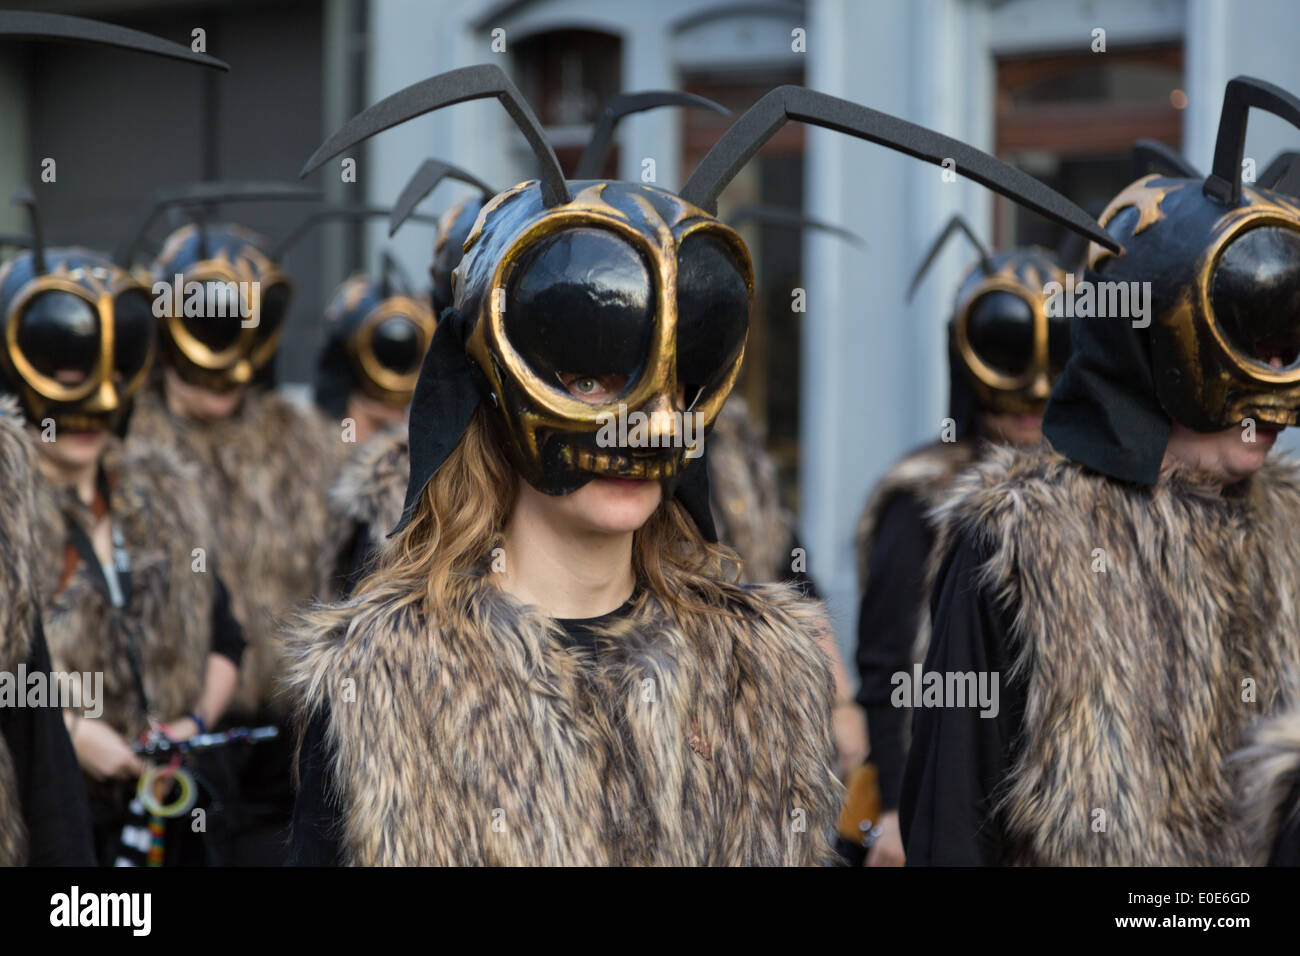 Una fotografía de algunos disfraces de abeja con máscaras en un carnaval.  Están marchando juntos para llamar nuestra atención a su situación  Fotografía de stock - Alamy